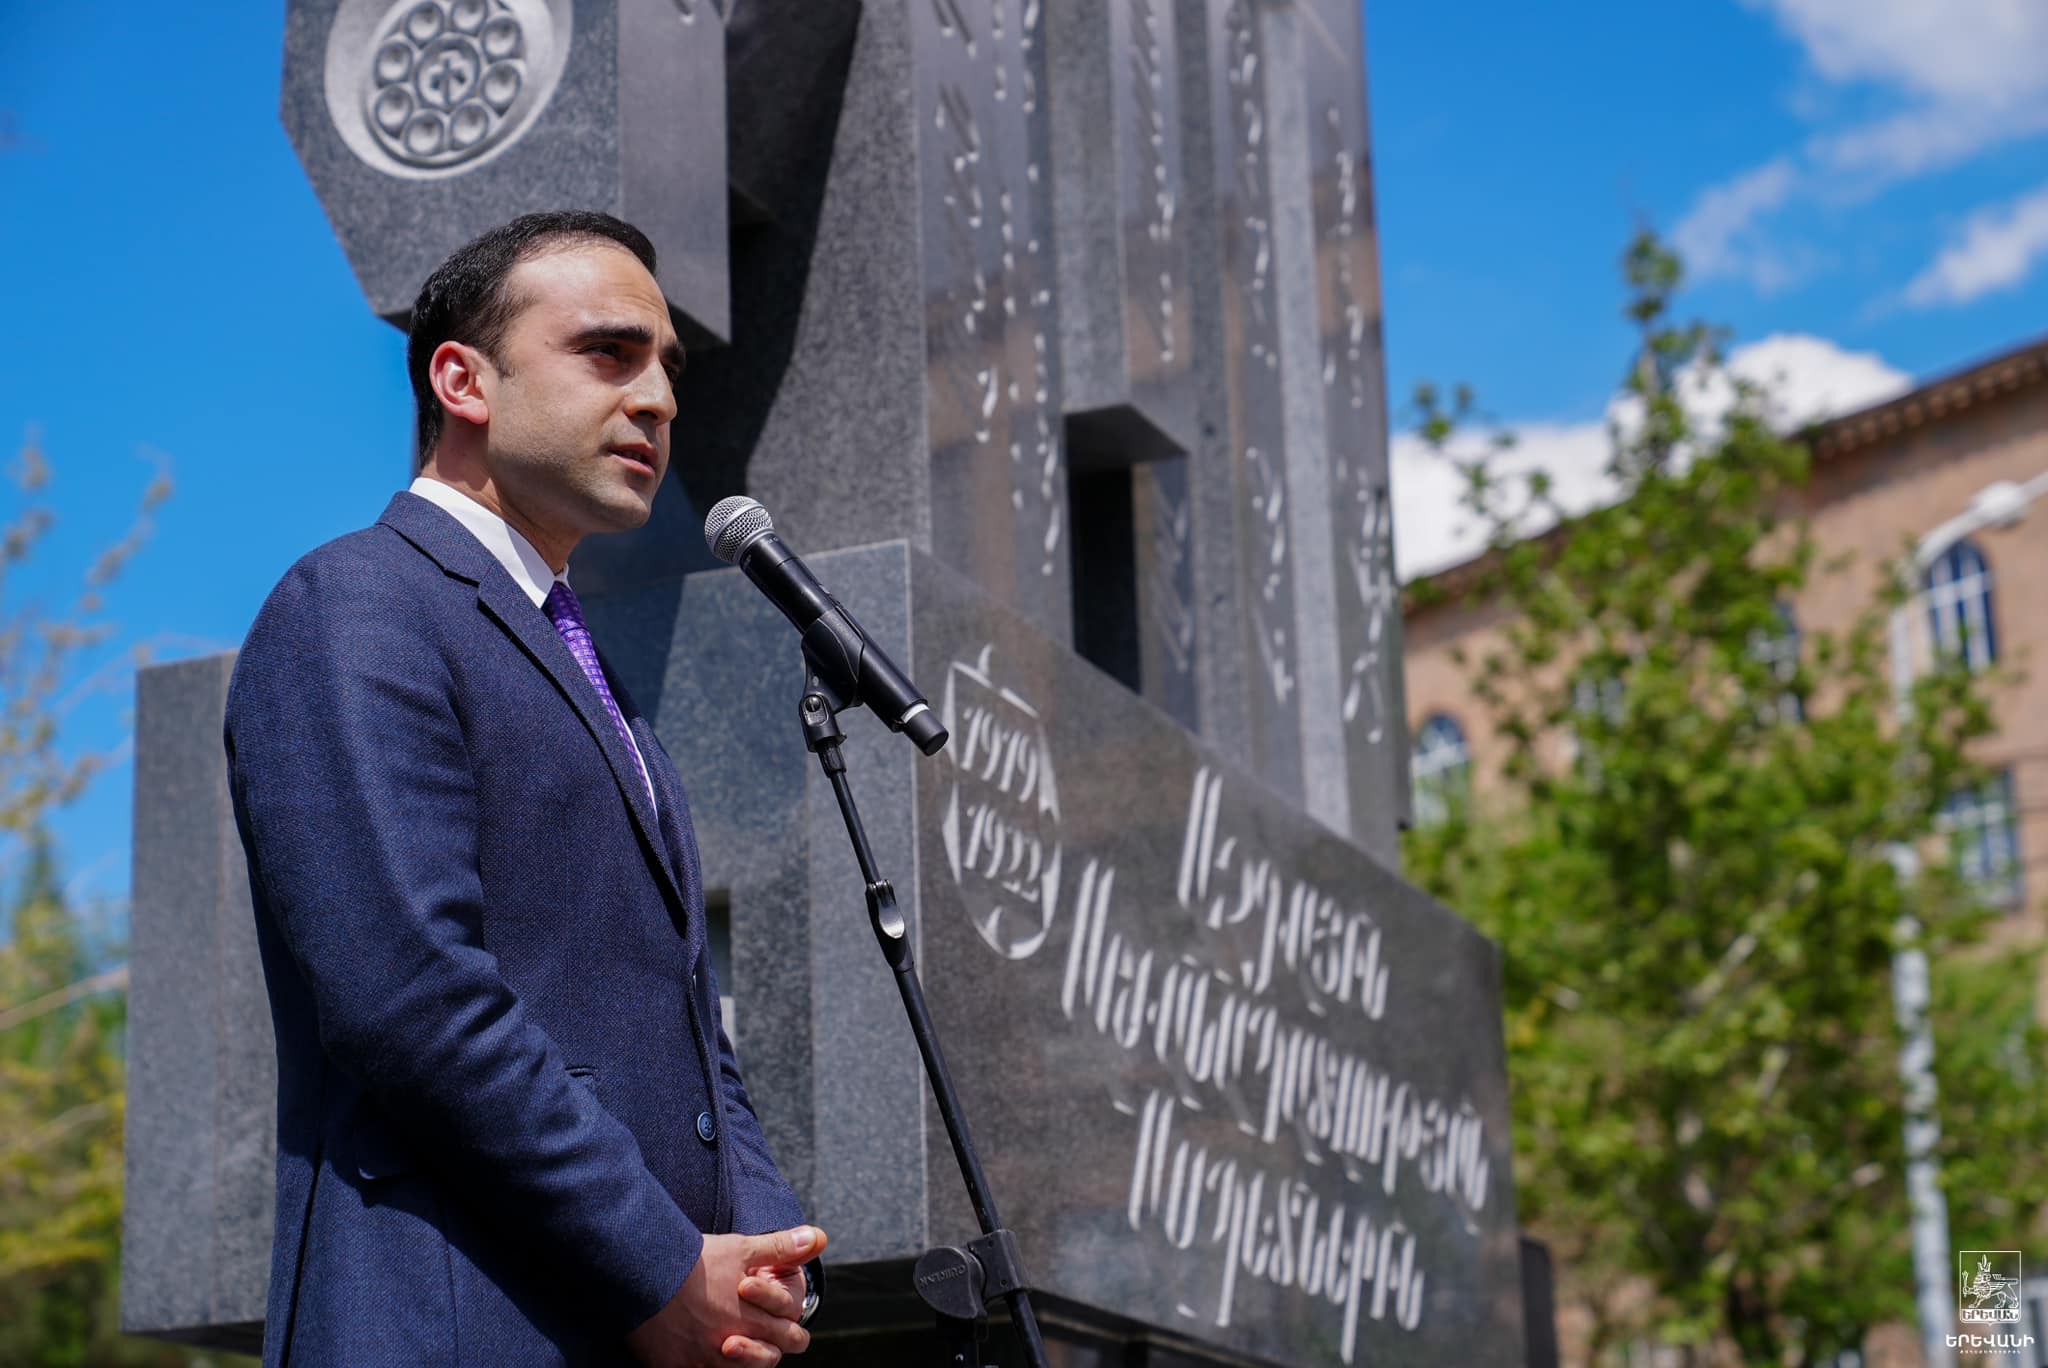 Երևանում բացվեց «Նեմեսիս»-ի հերոսների հուշակոթողը. Ավինյանի ելույթը սուլոցներով ուղեկցվեց